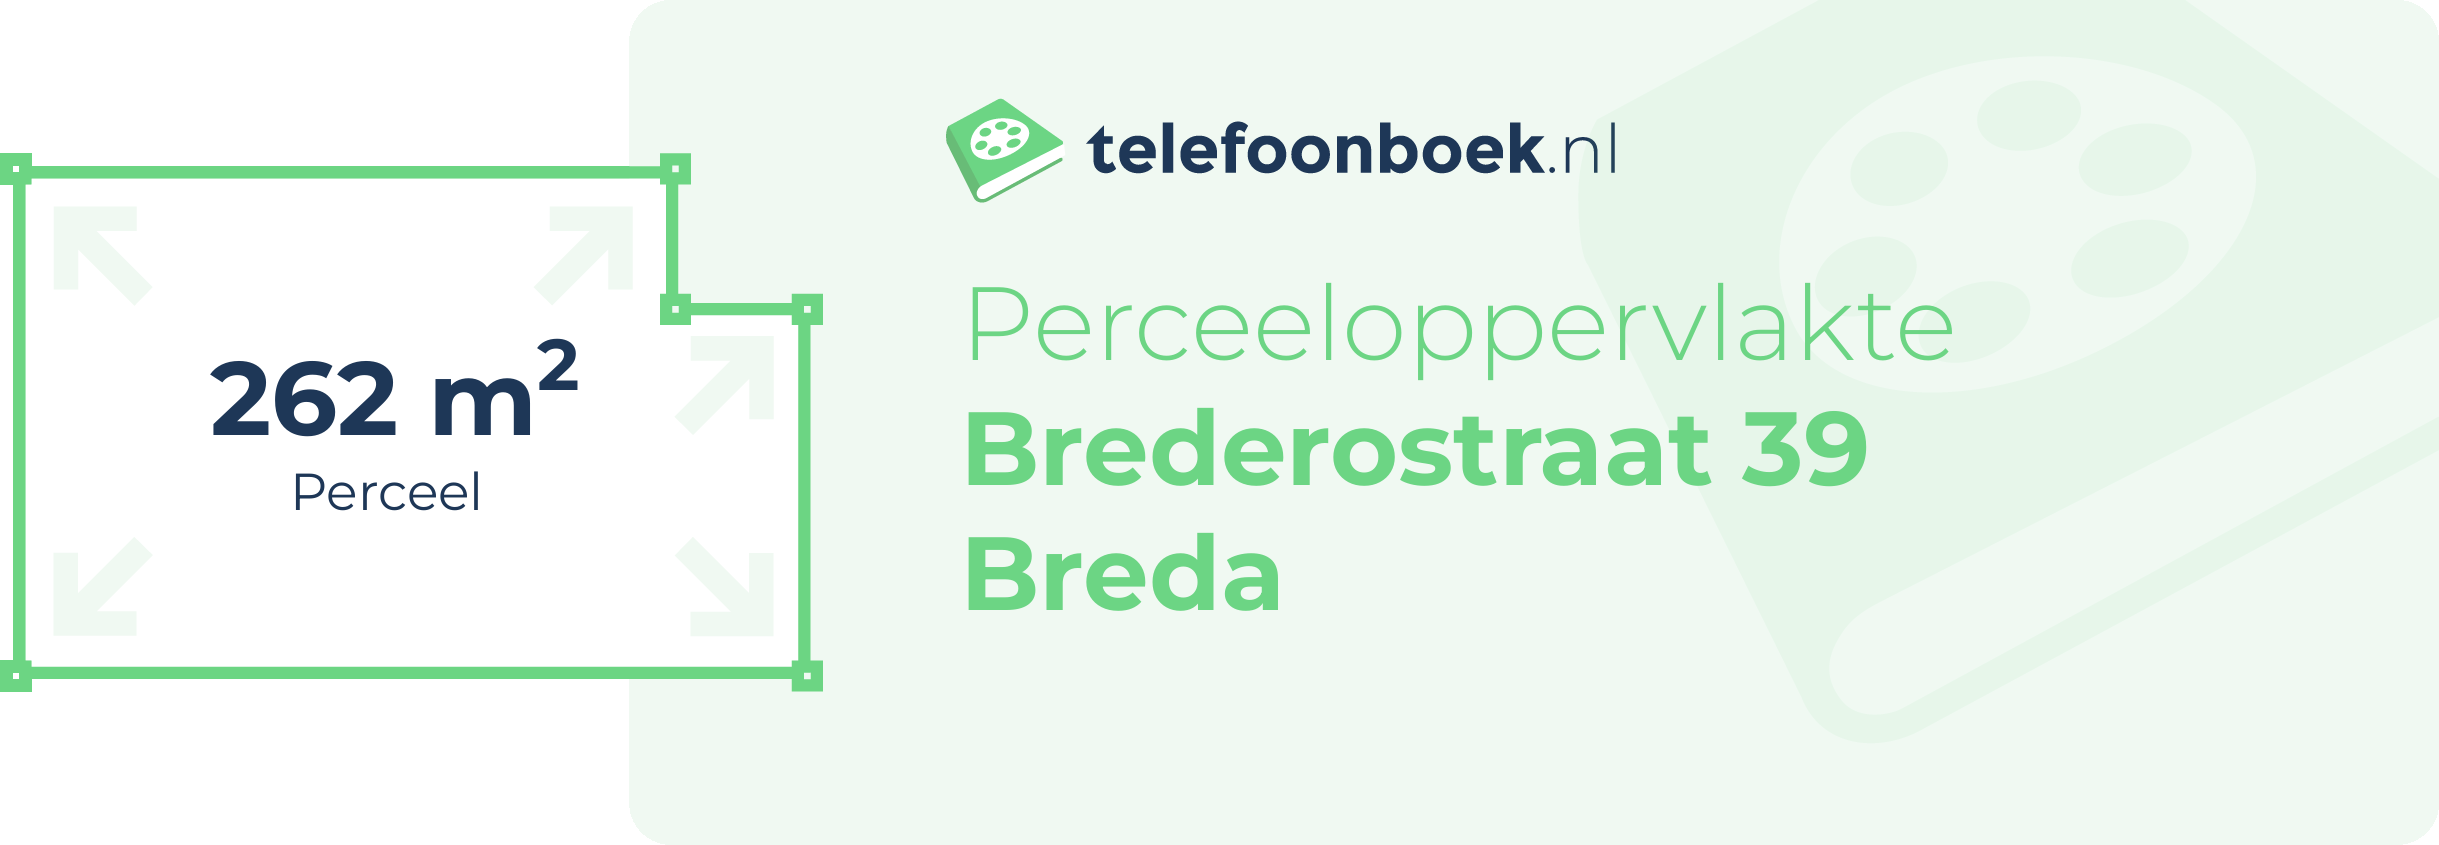 Perceeloppervlakte Brederostraat 39 Breda